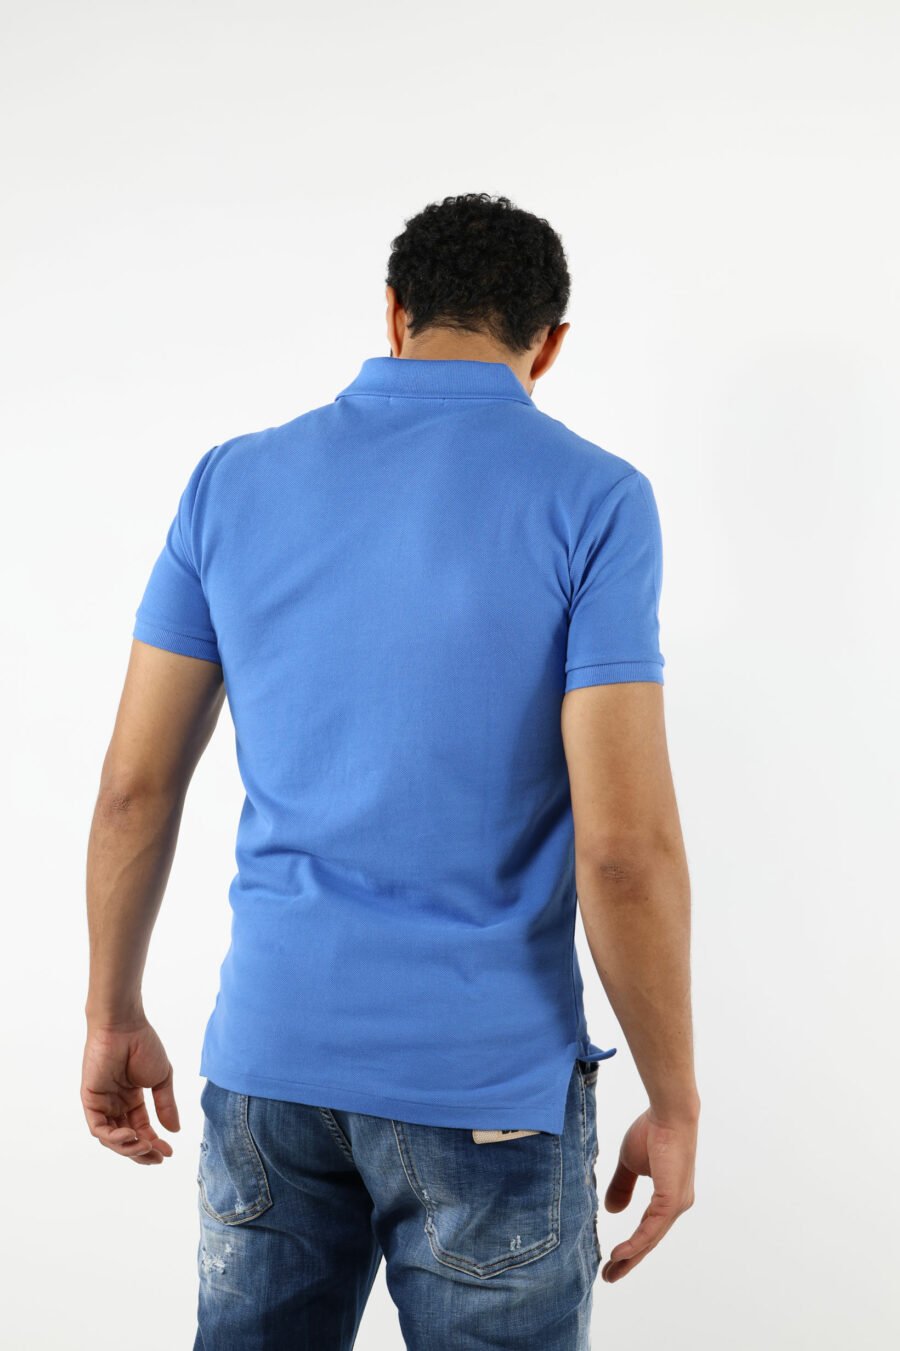 Camiseta azul y rosa con minilogo "polo" - 111232